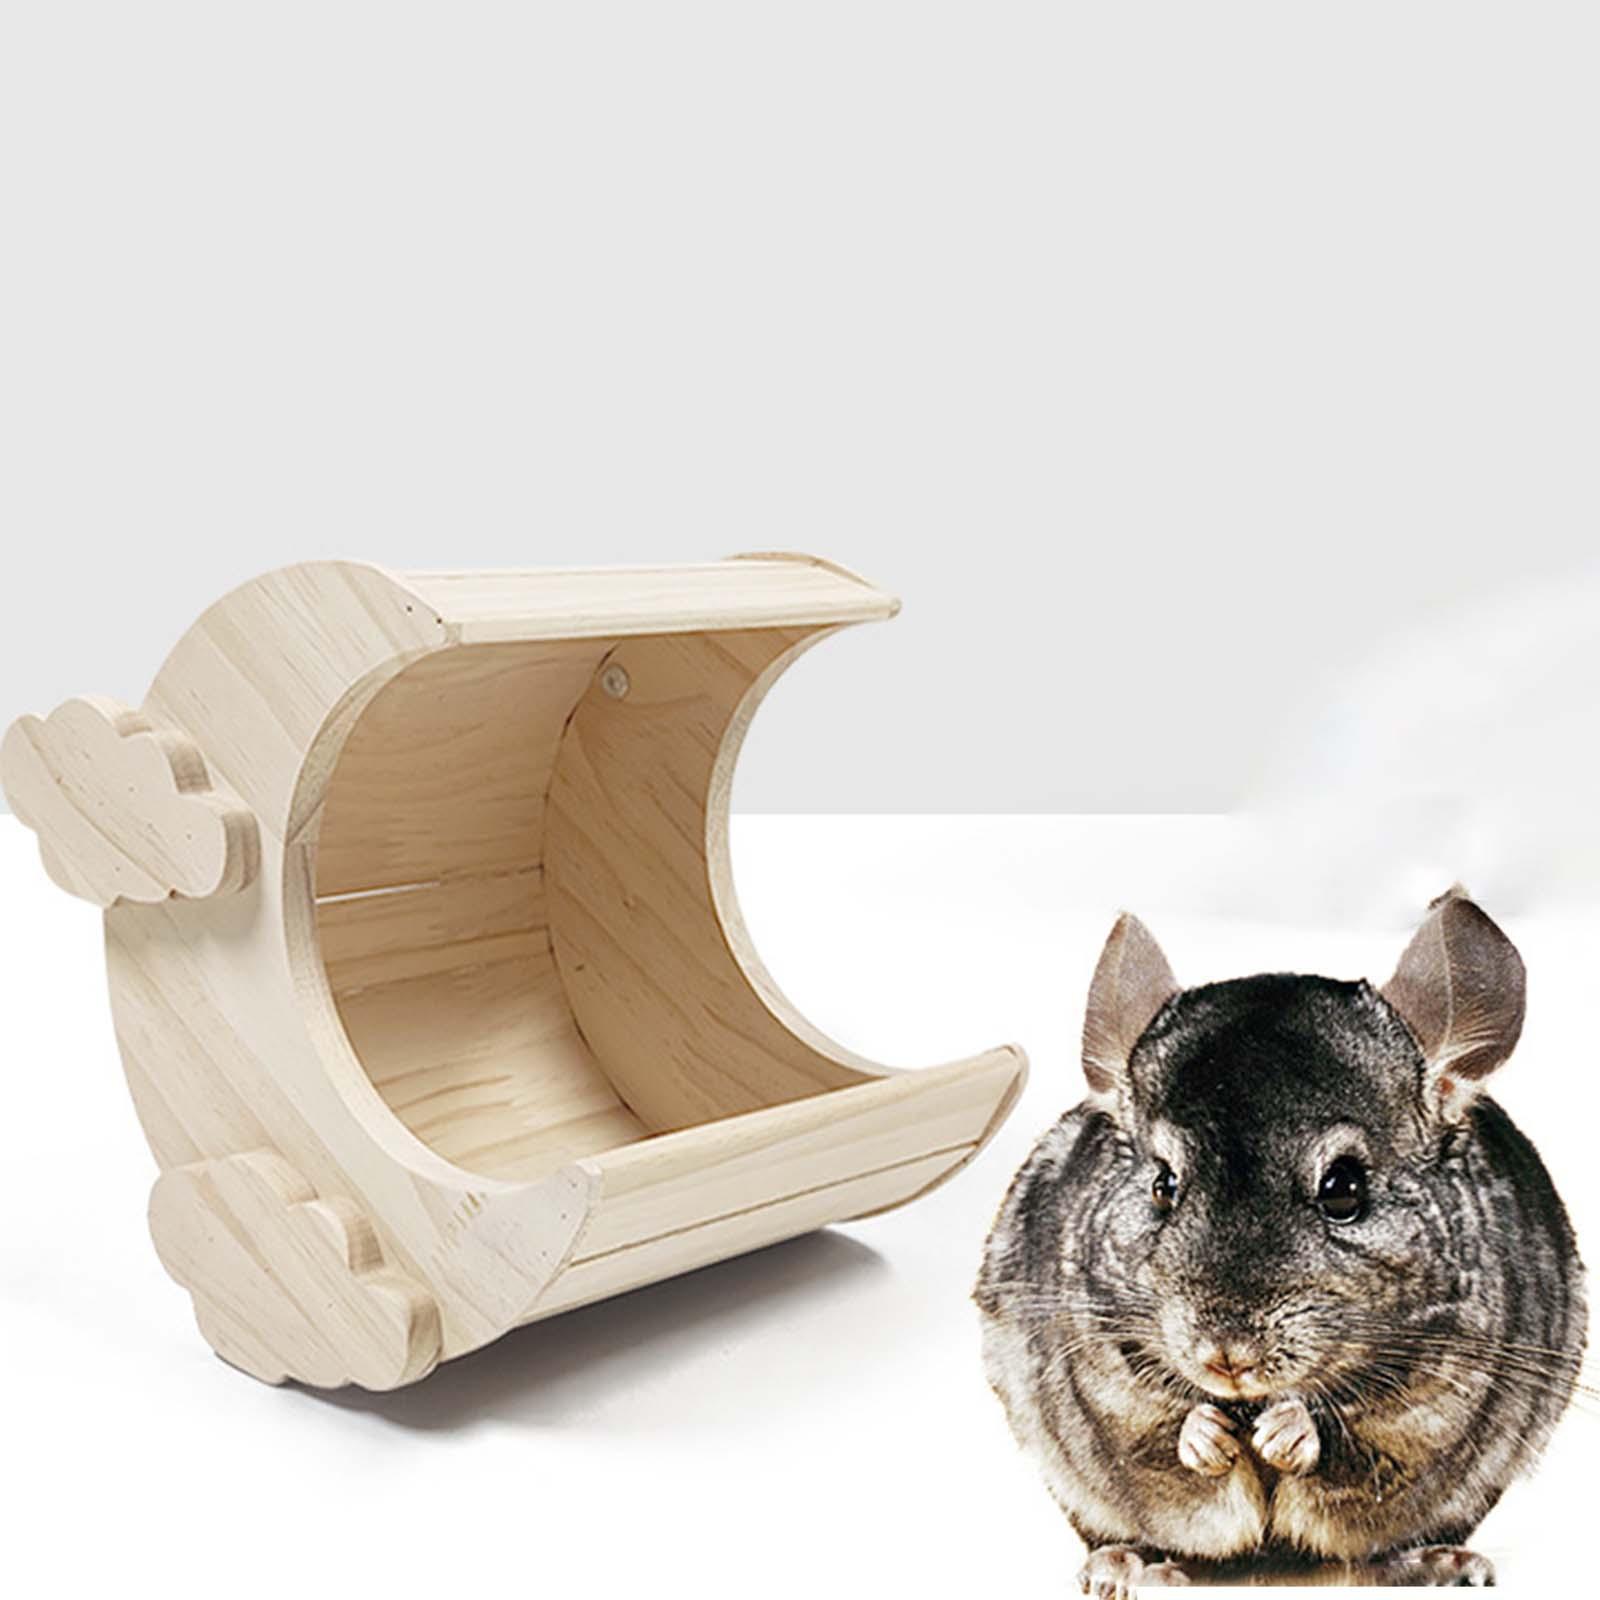 Aimishion nhà hamster Túp Lều hình thỏ bằng gỗ lâu đài cho chuột động vật